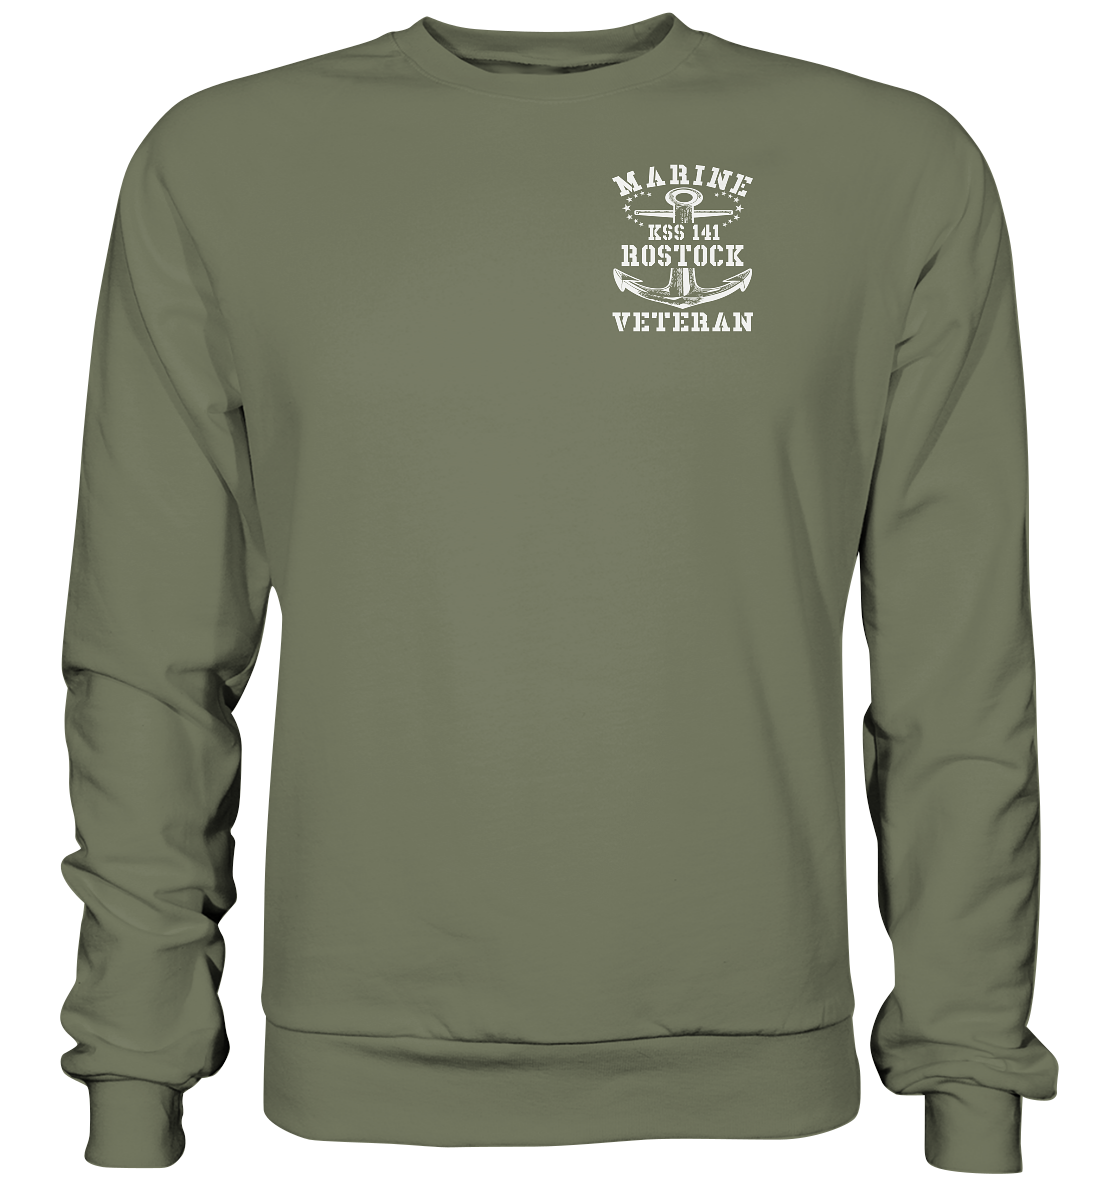 KSS 141 ROSTOCK Marine Veteran Brustlogo - Premium Sweatshirt